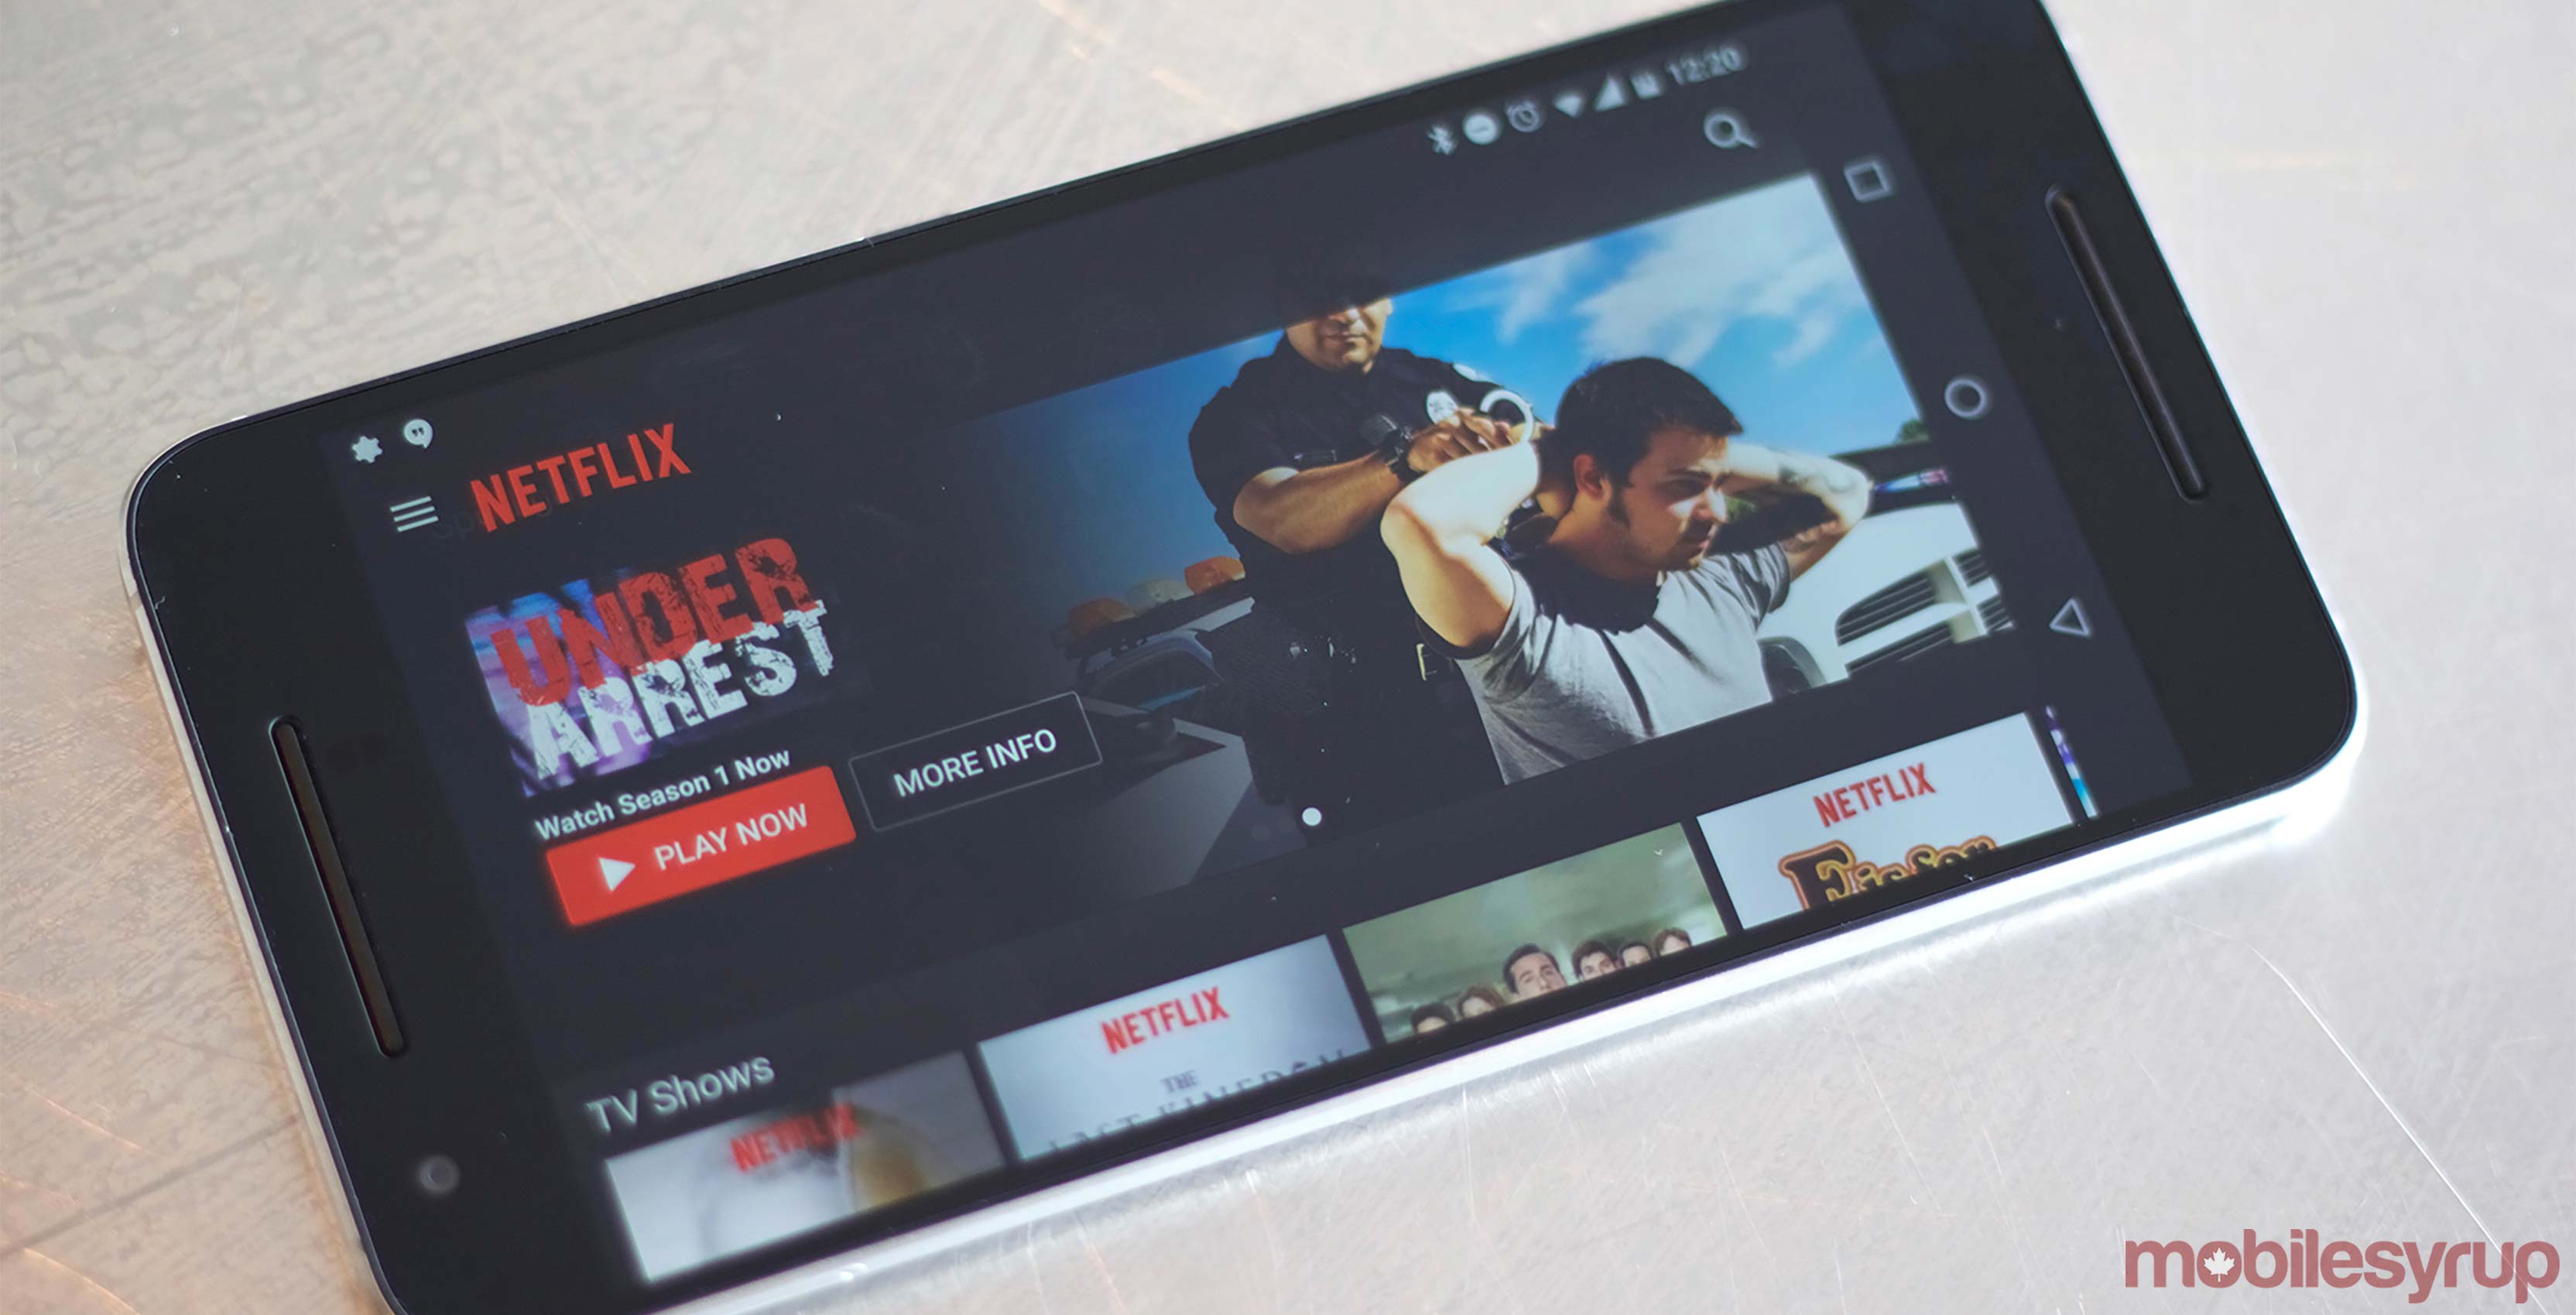 Netflix app on screen - Netflix hdr